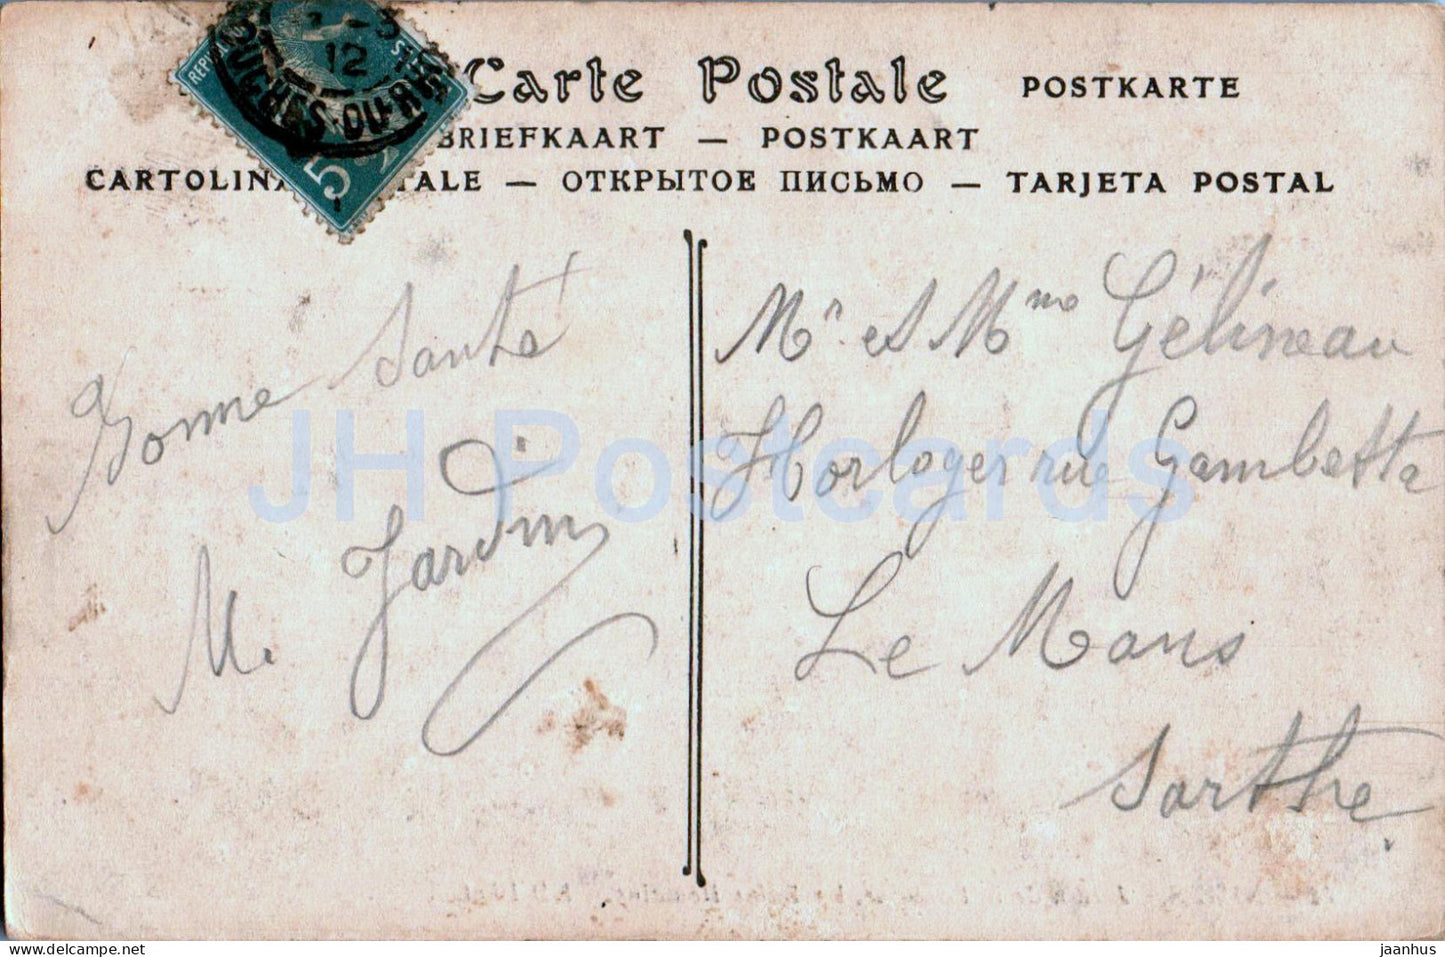 Nimes - Jardin de la Fontaine les Bains Romains - 82 - alte Postkarte - 1912 - Frankreich - gebraucht 